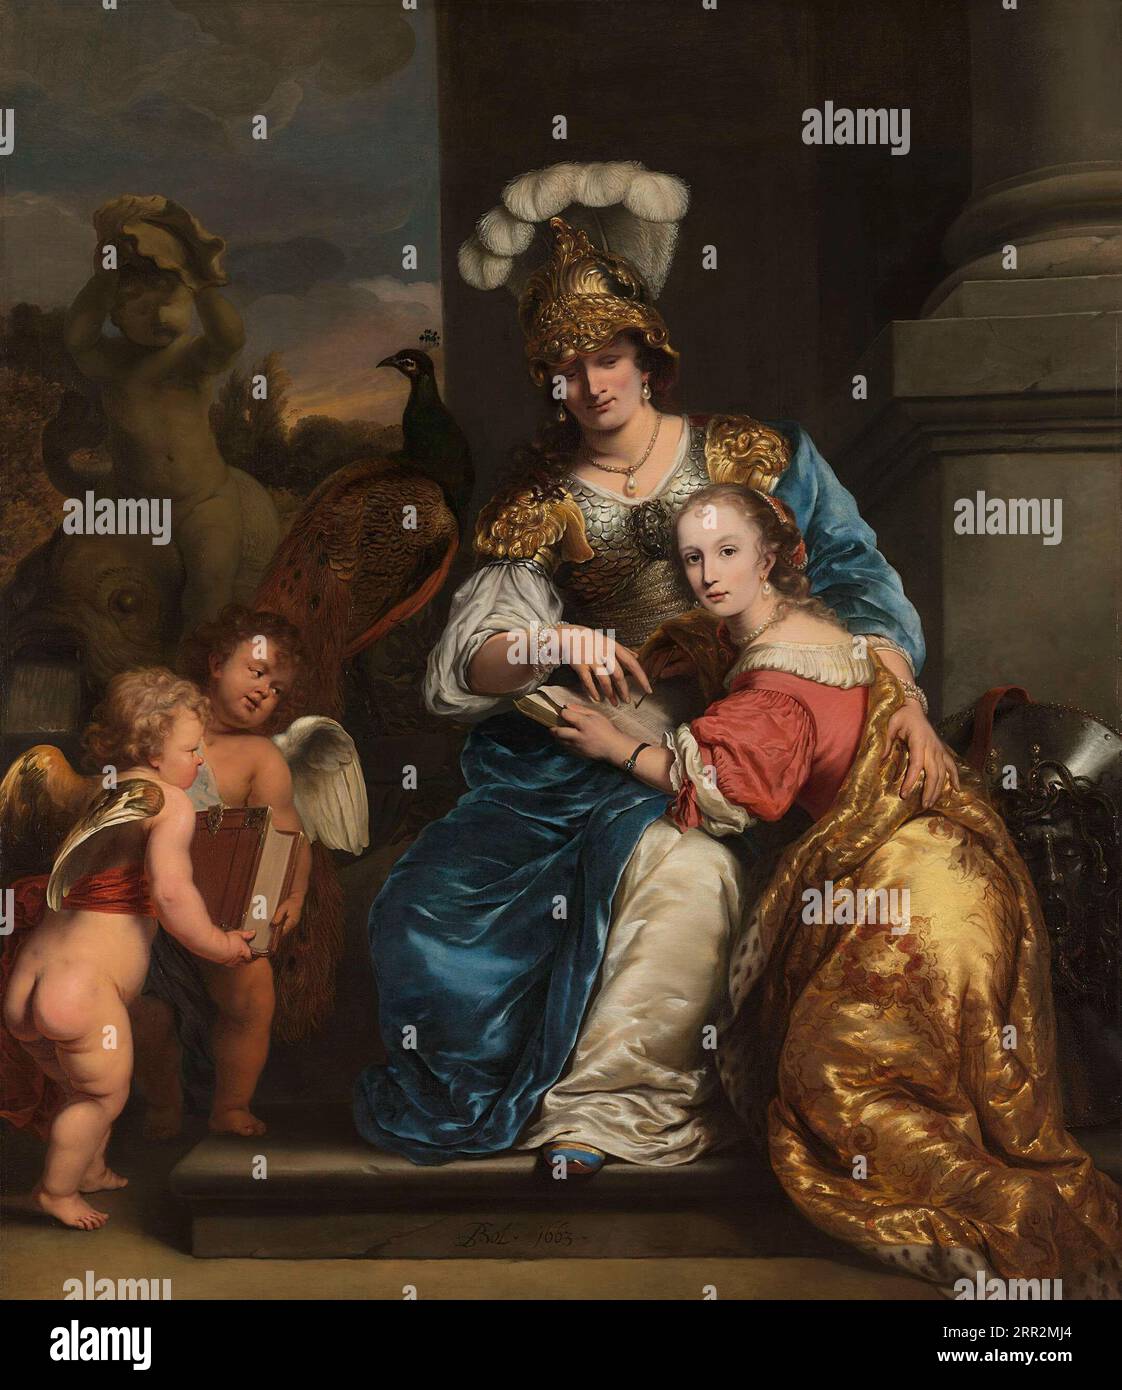 Ferdinand Bol (1616–1680) Allegoria sull'educazione. Margarita Trip interpreta Minerva, istruendo sua sorella Anna Maria Trip. A sinistra due putti portano un grande libro. A destra lo scudo di Minerva. Foto Stock